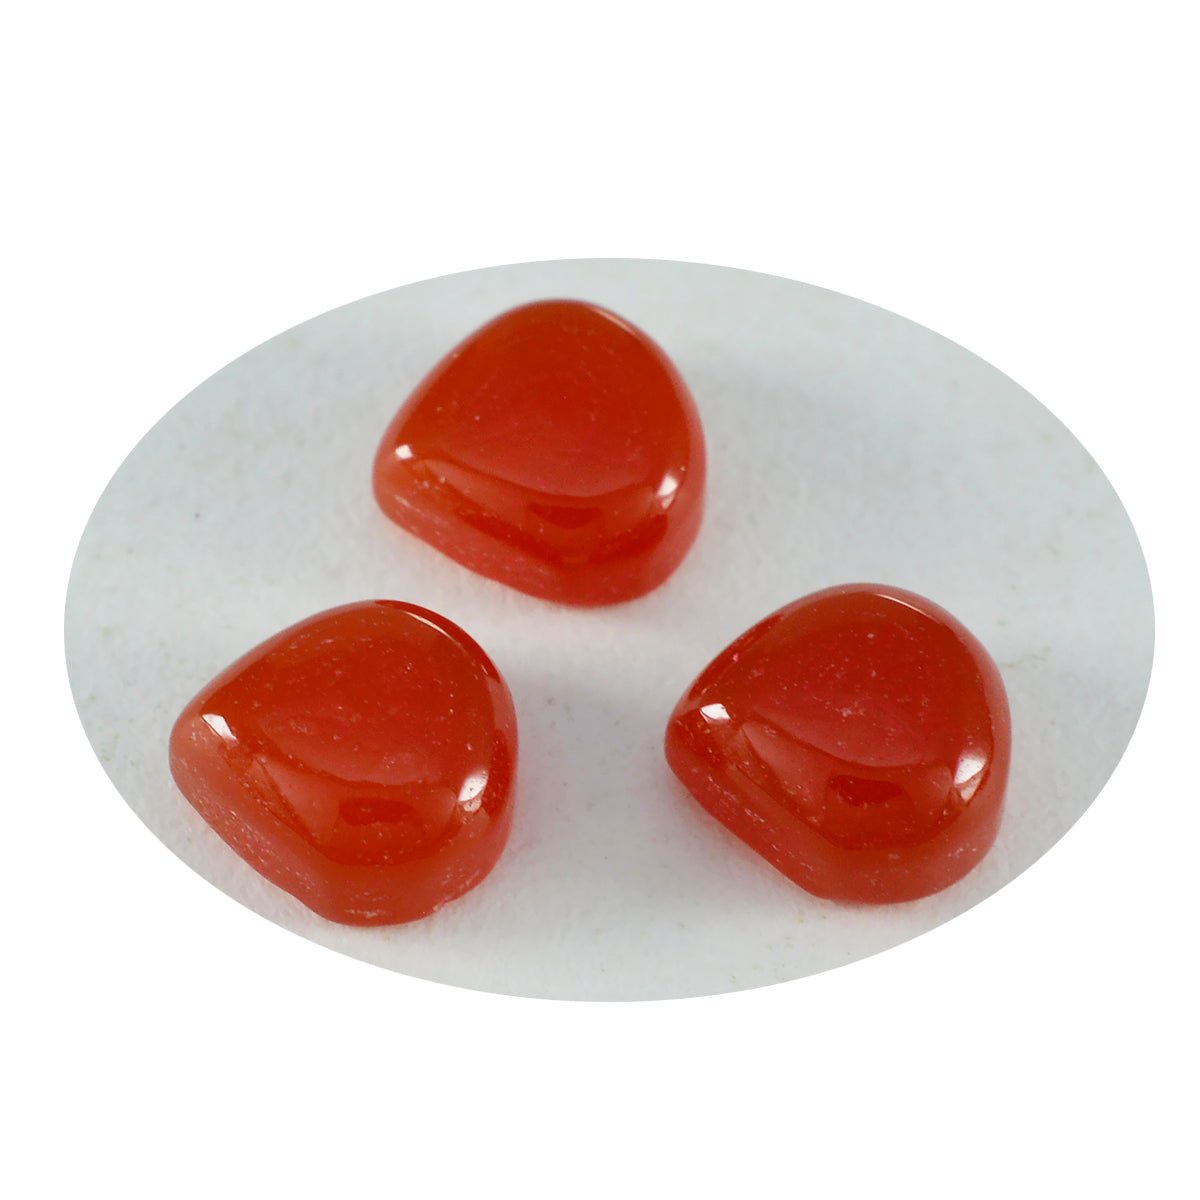 Riyogems, 1 pieza, cabujón de ónix rojo, 14x14mm, forma de corazón, preciosa gema de calidad